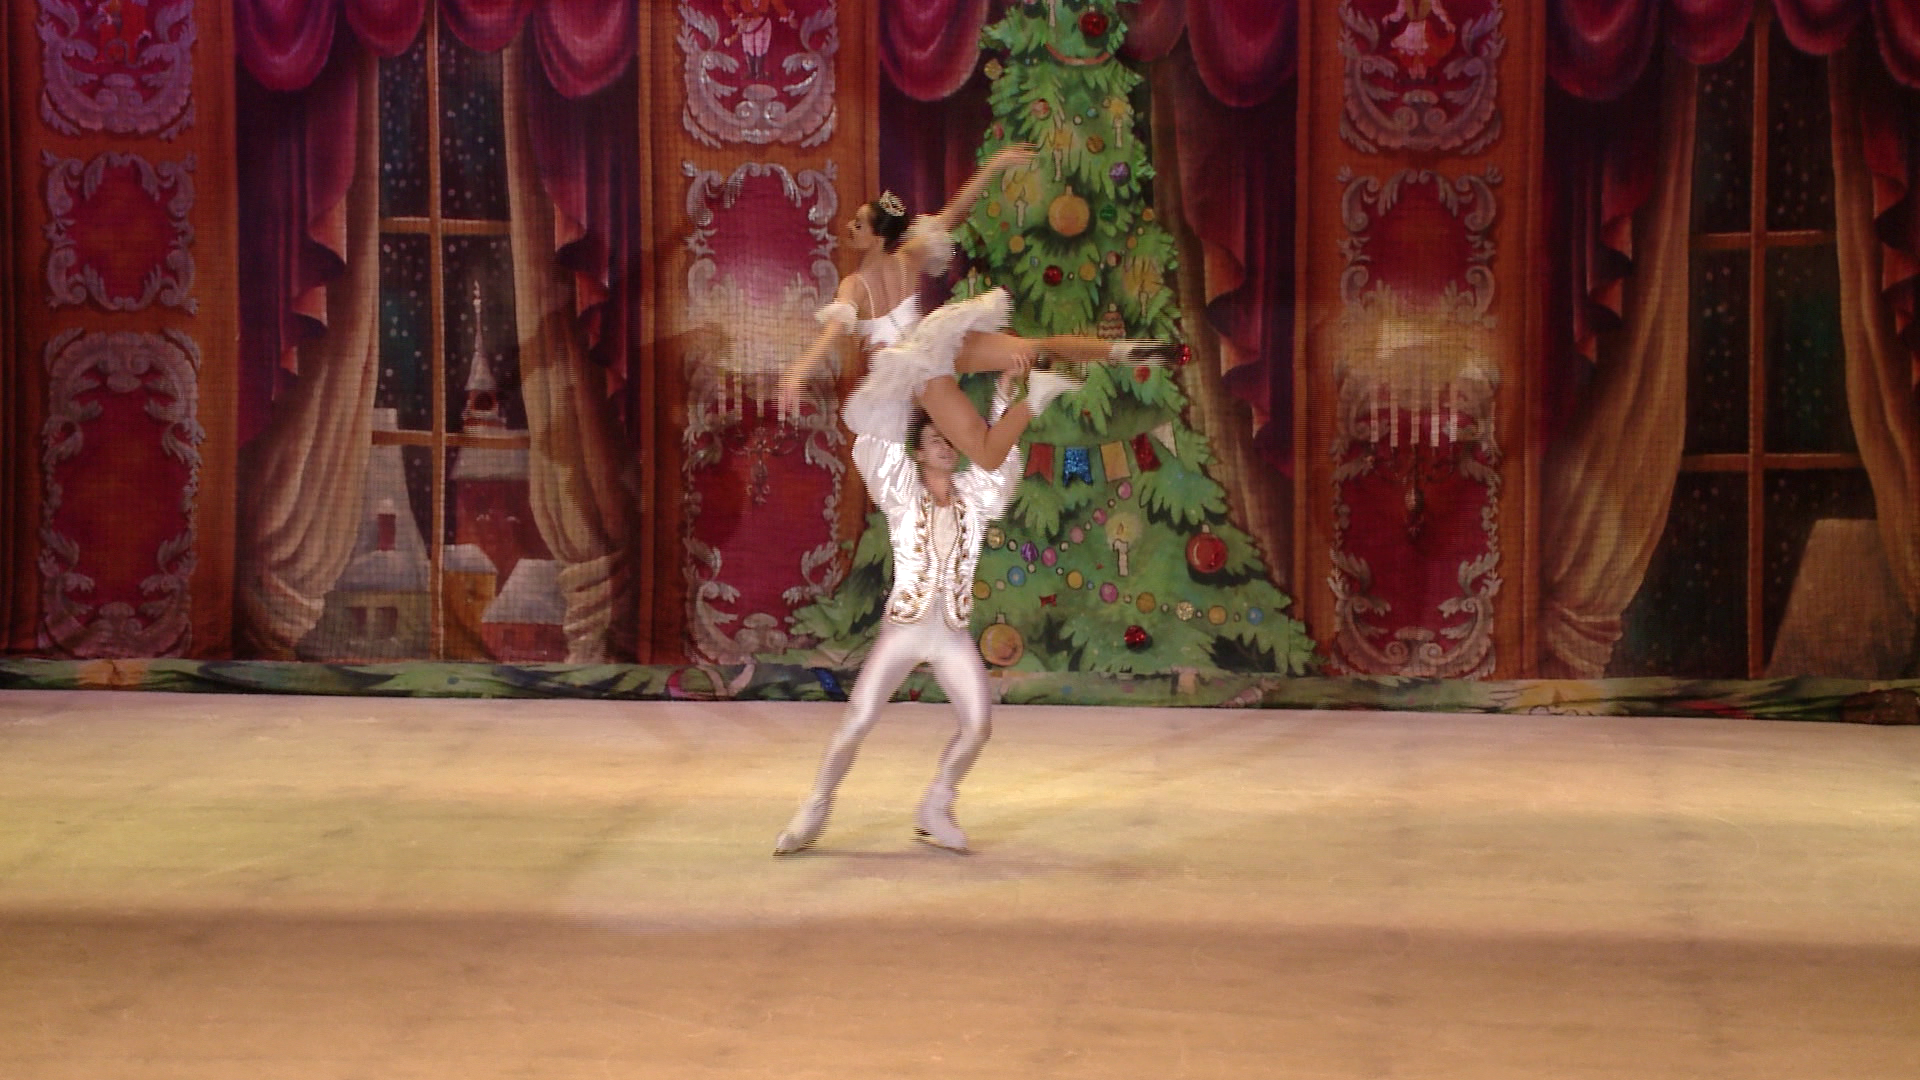 Artistii rusi i-au vrajit aseara pe timisoreni cu cel mai frumos balet pe gheata. VIDEO